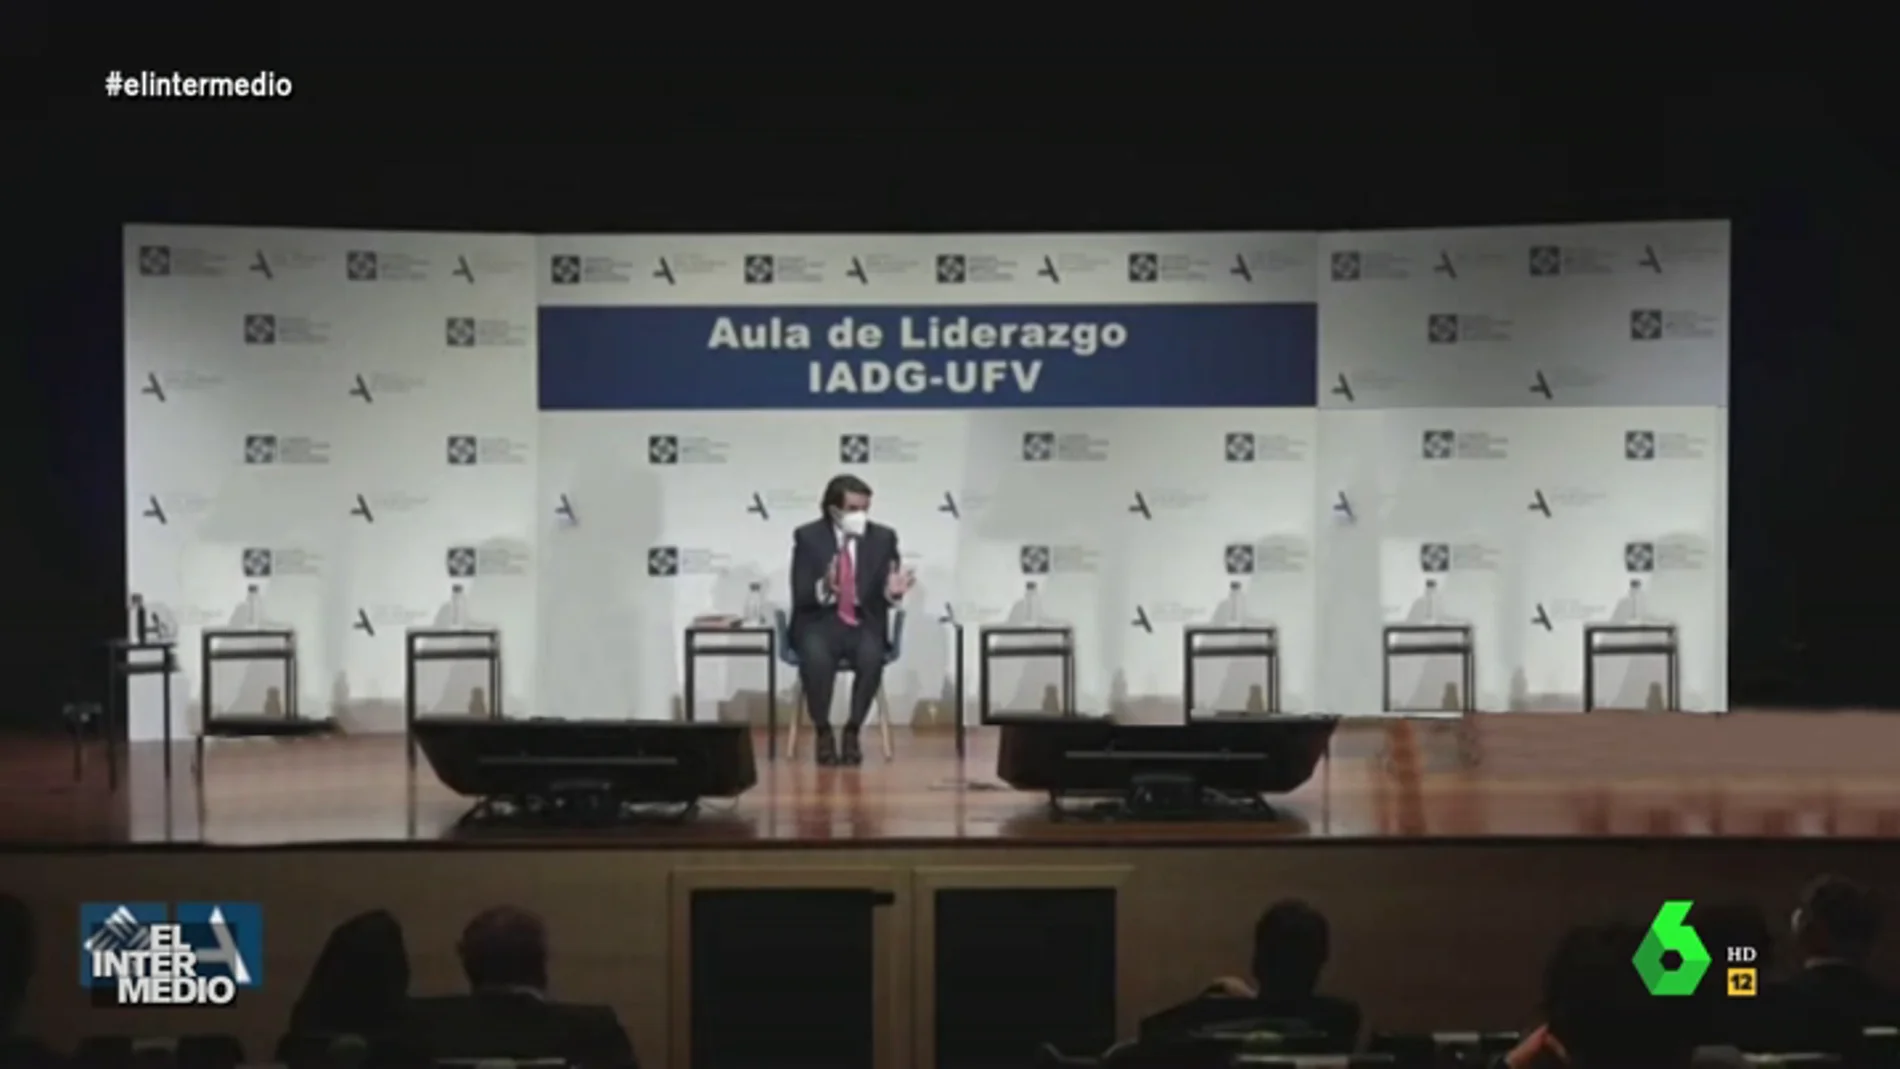 Vídeo manipulado - Aznar sorprende hablando solo en un acto público